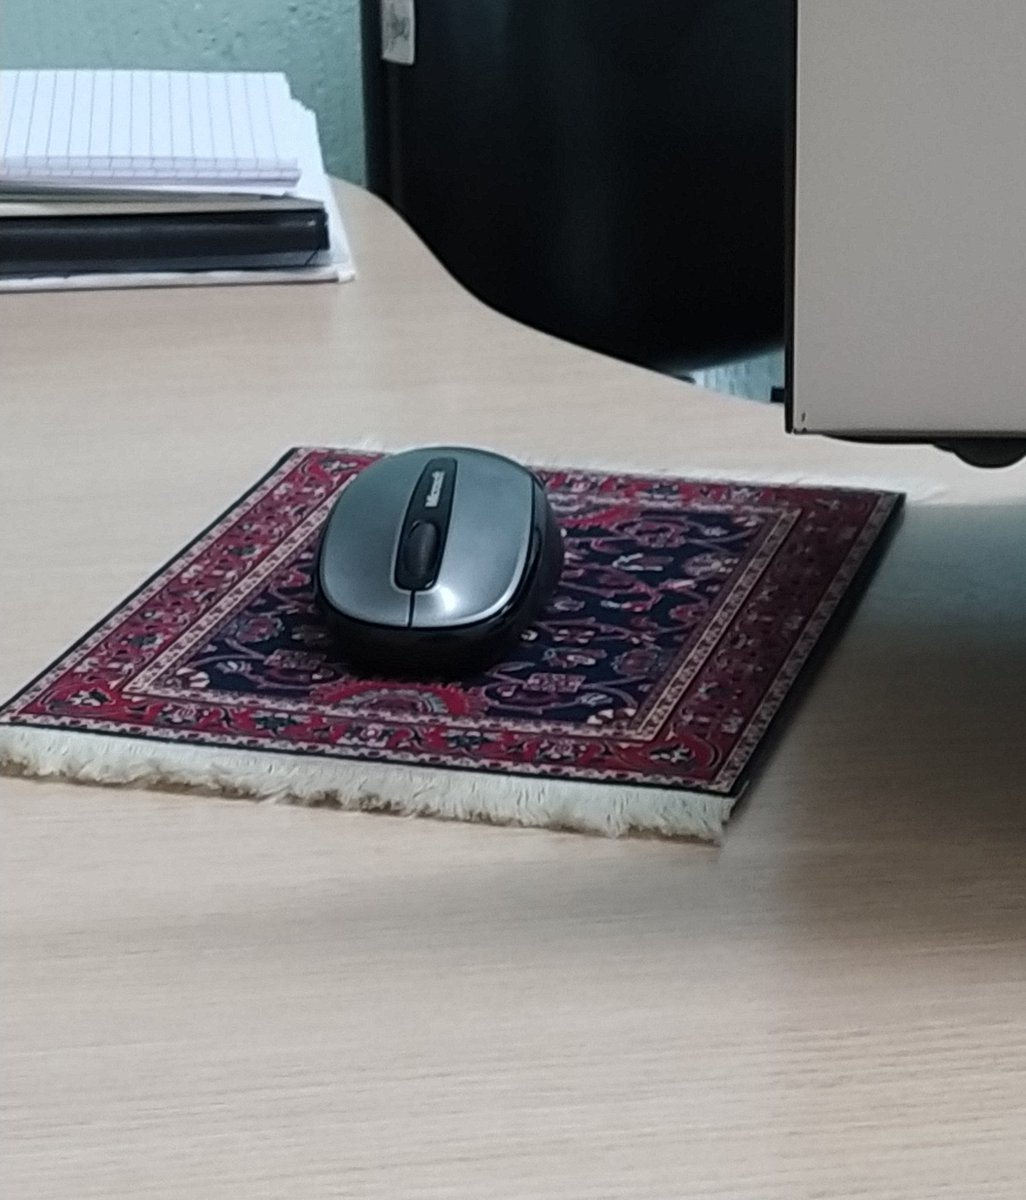 obcecada com esse mousepad de tapetinho